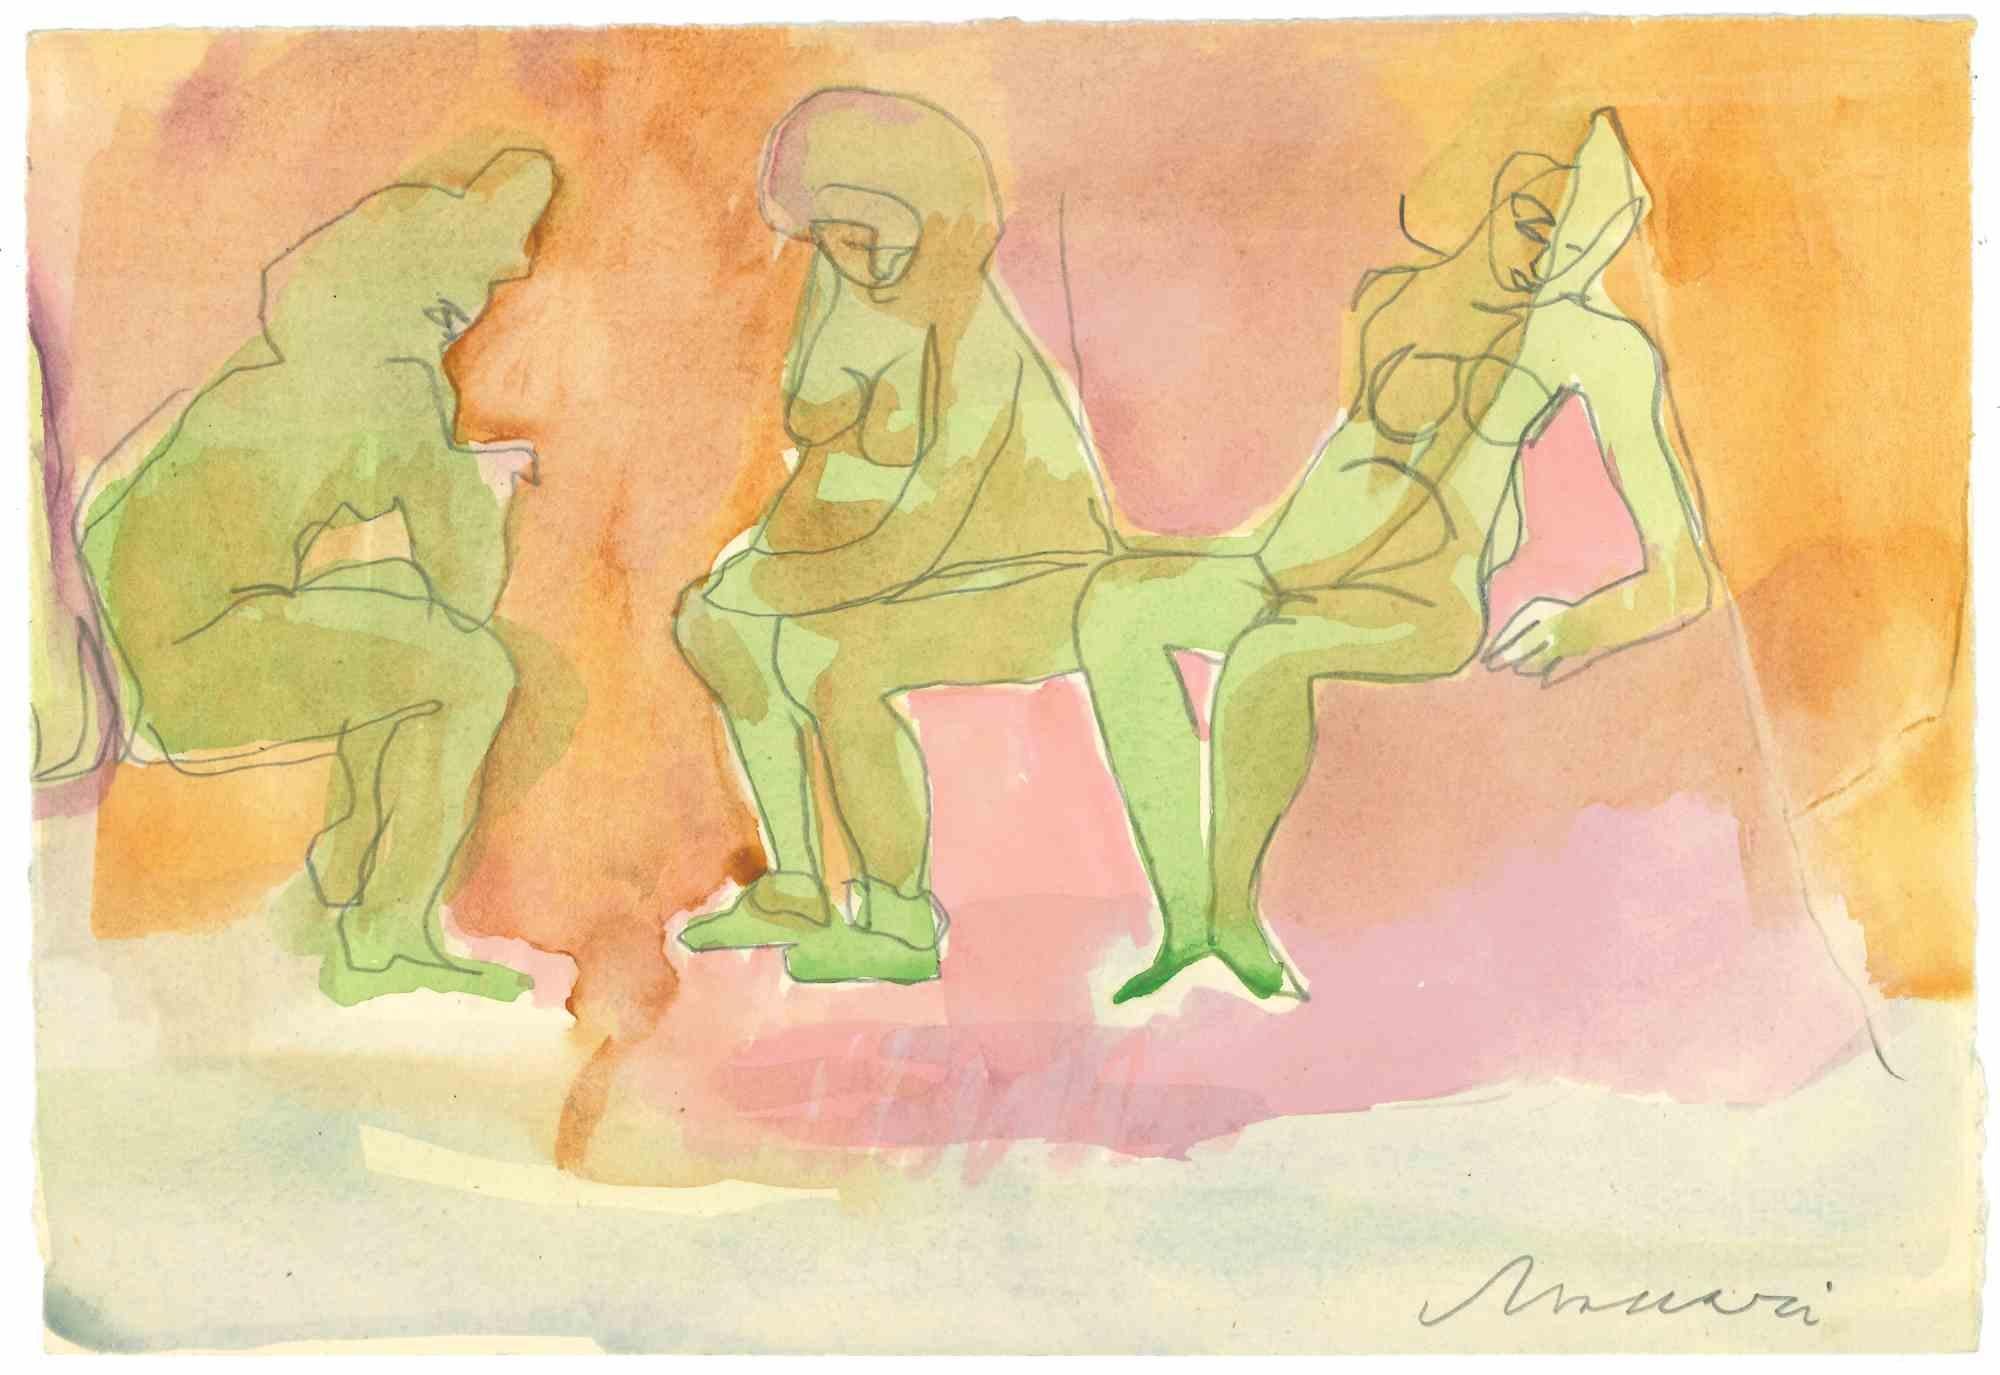 Frauen ist eine Bleistift- und Aquarell-Zeichnung von Mino Maccari  (1924-1989) in der Mitte des 20. Jahrhunderts.

Handsigniert auf der Unterseite.

Gute Bedingungen.

Mino Maccari (Siena, 1924-Rom, 16. Juni 1989) war ein italienischer